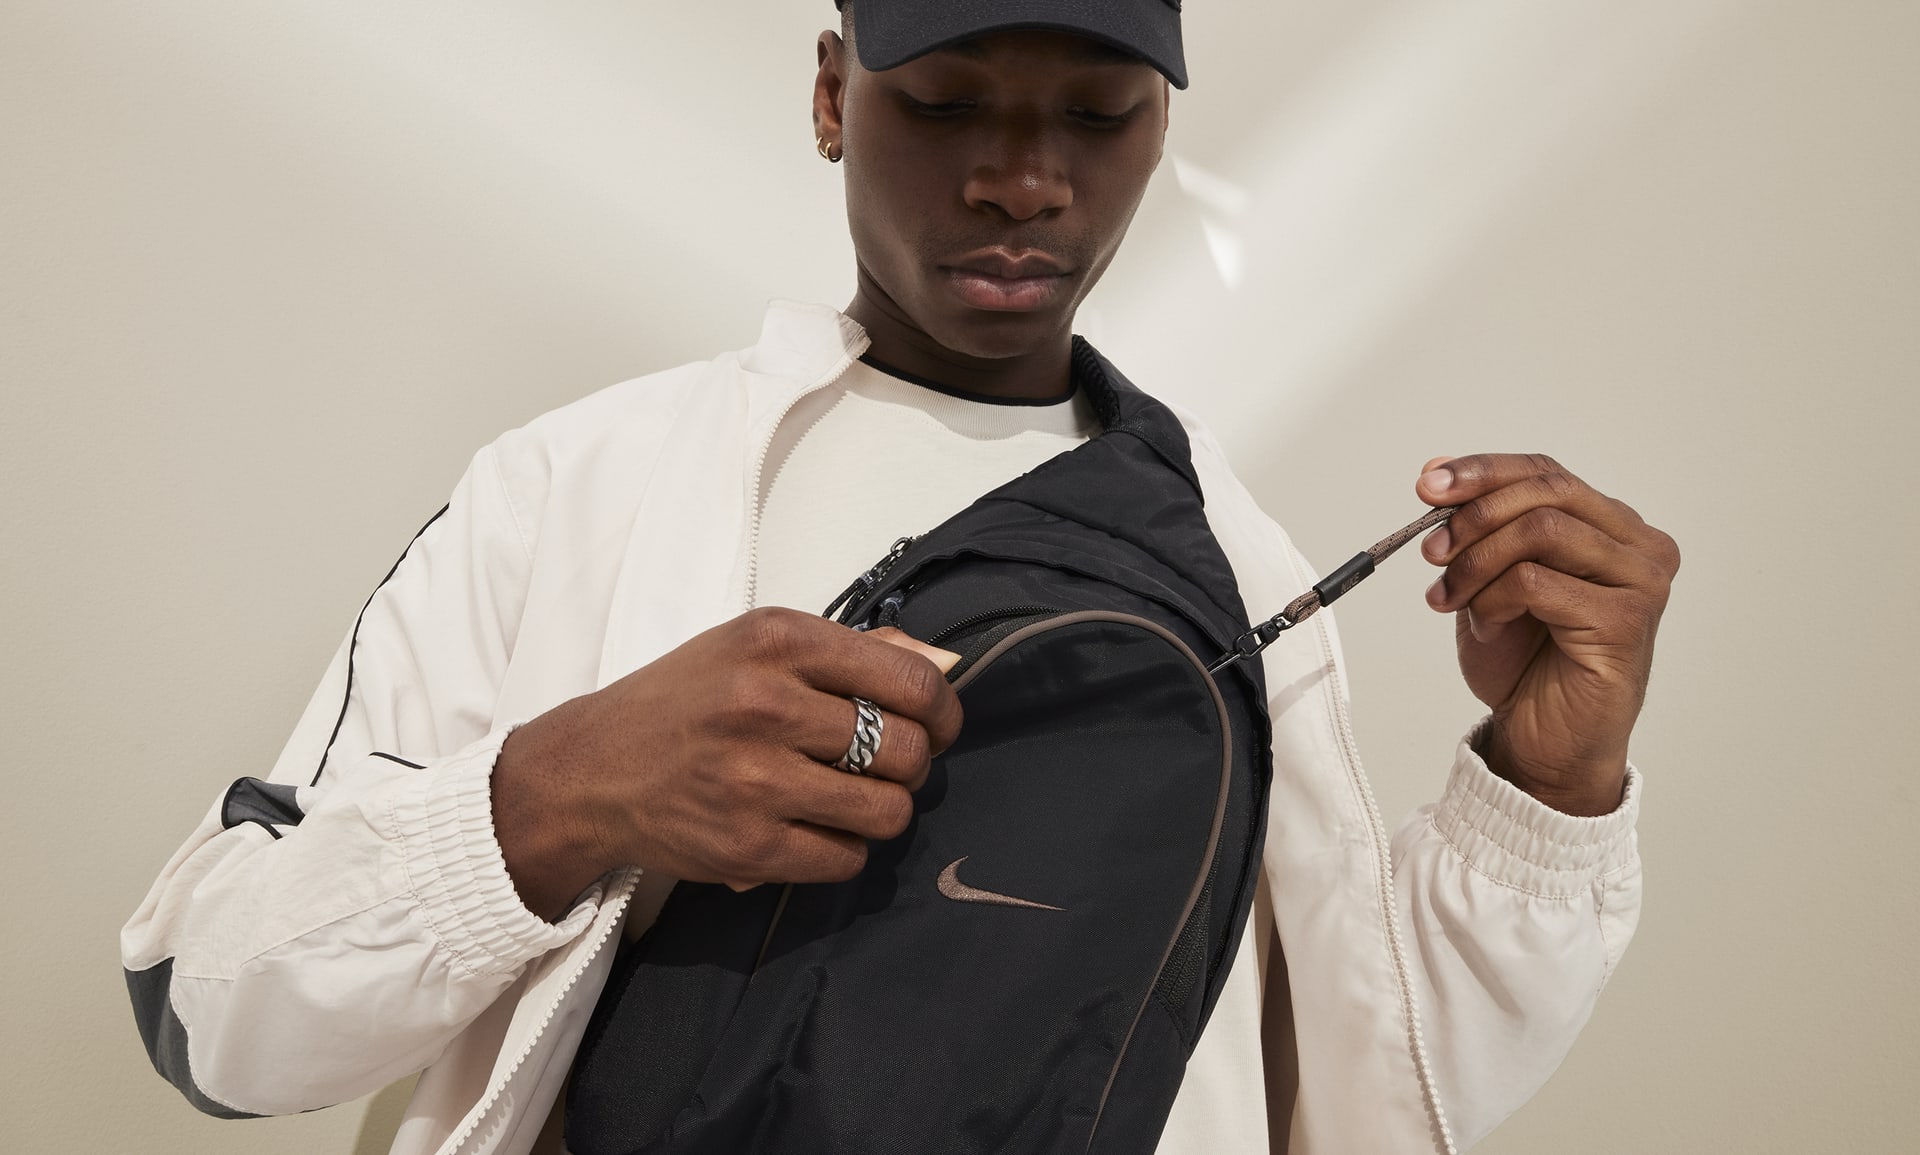 Pochete Nike Sportswear Essentials Sling Unissex - Studio 78